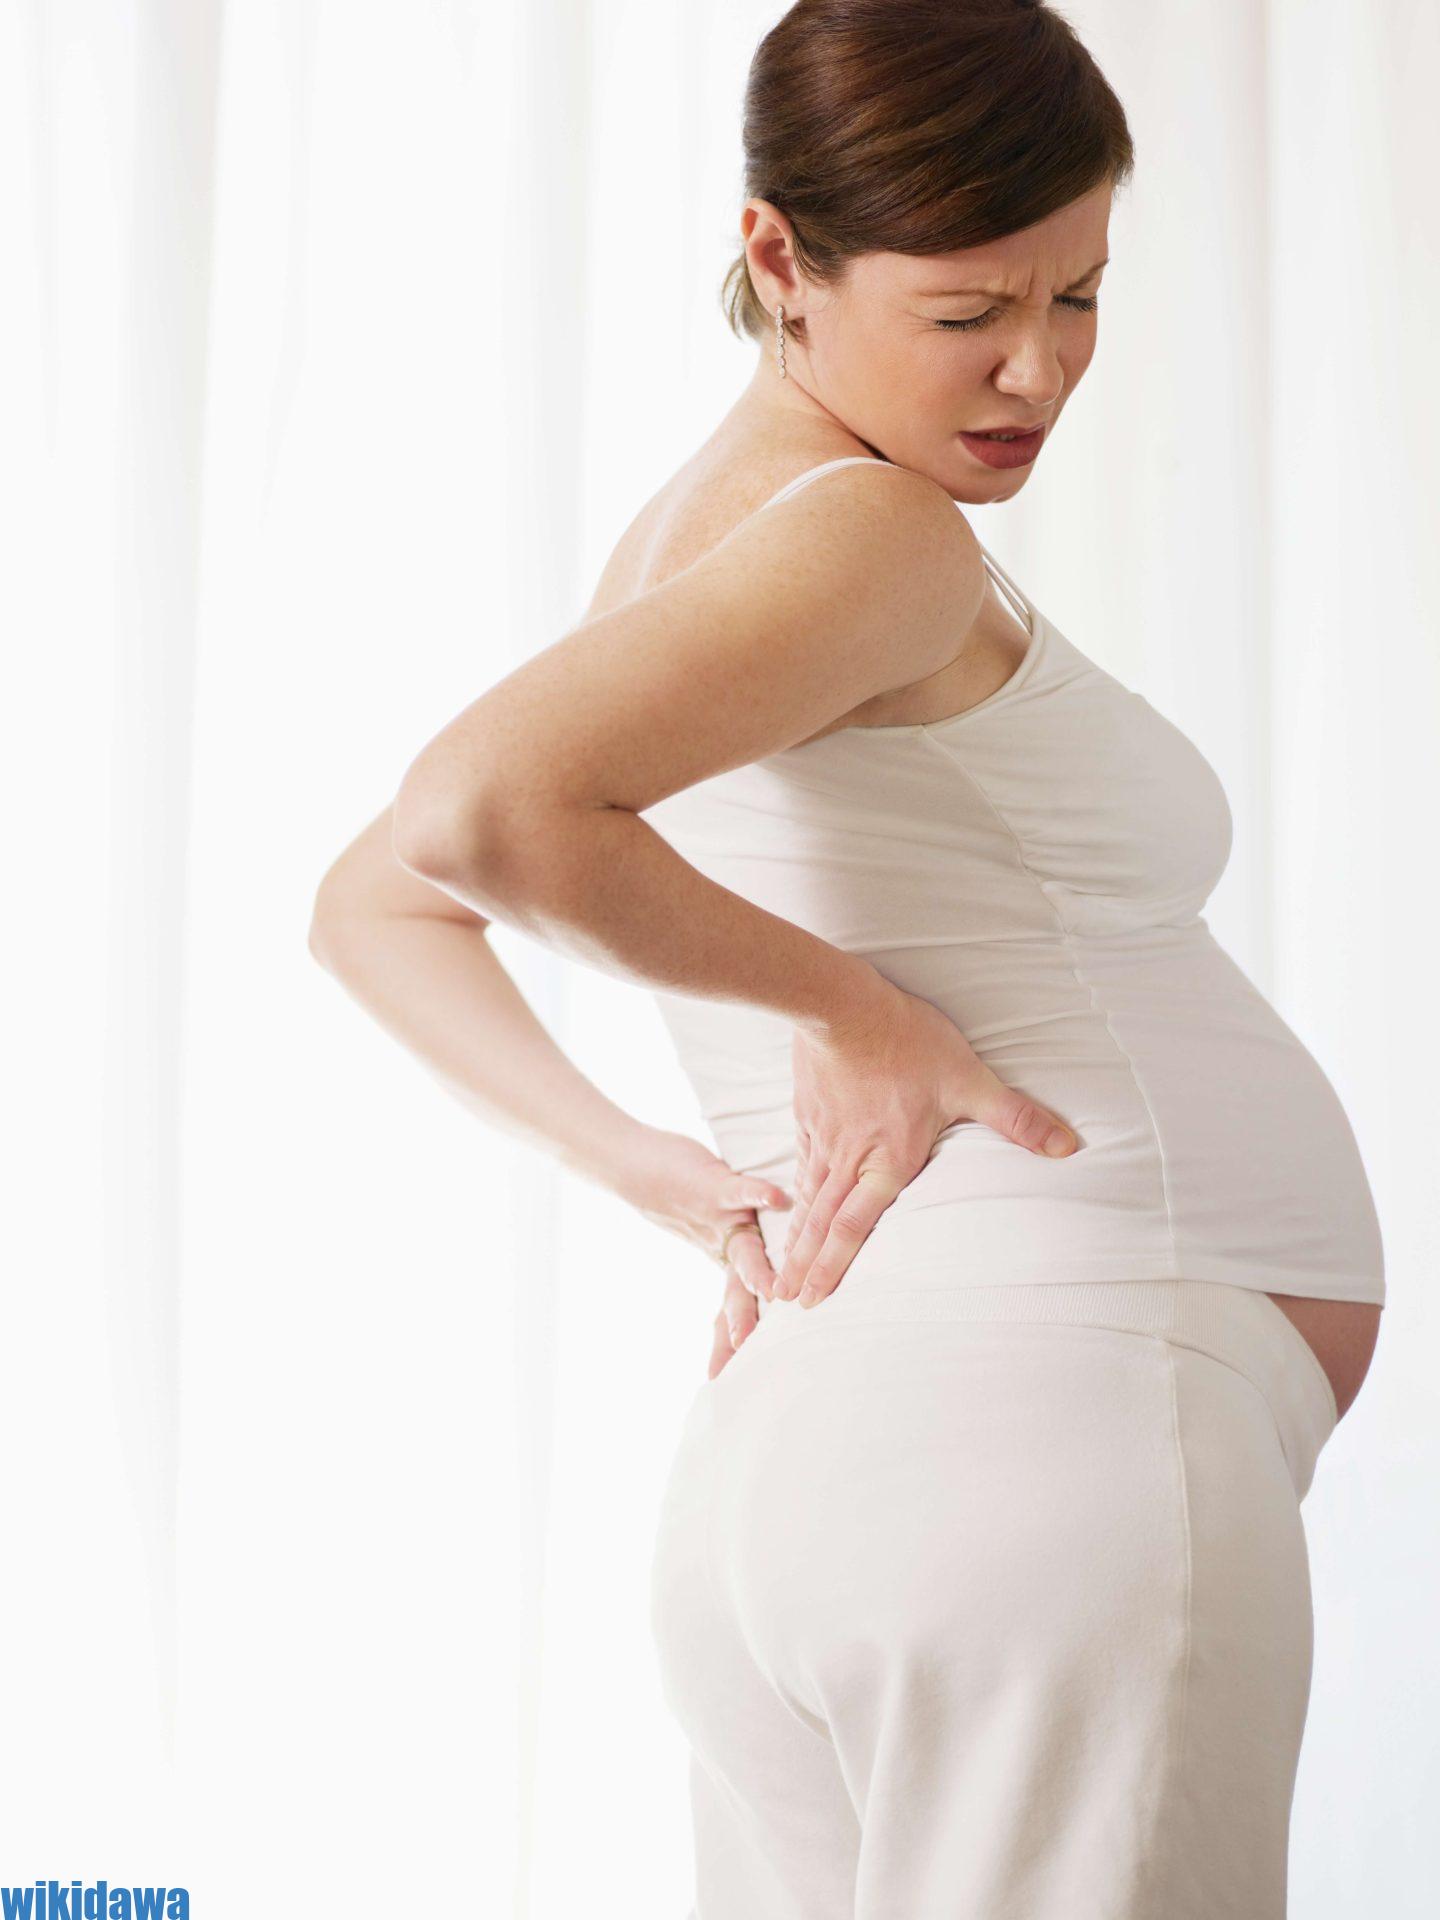 ما هي أسباب إرهاق الحمل خلال الشهور الأولى